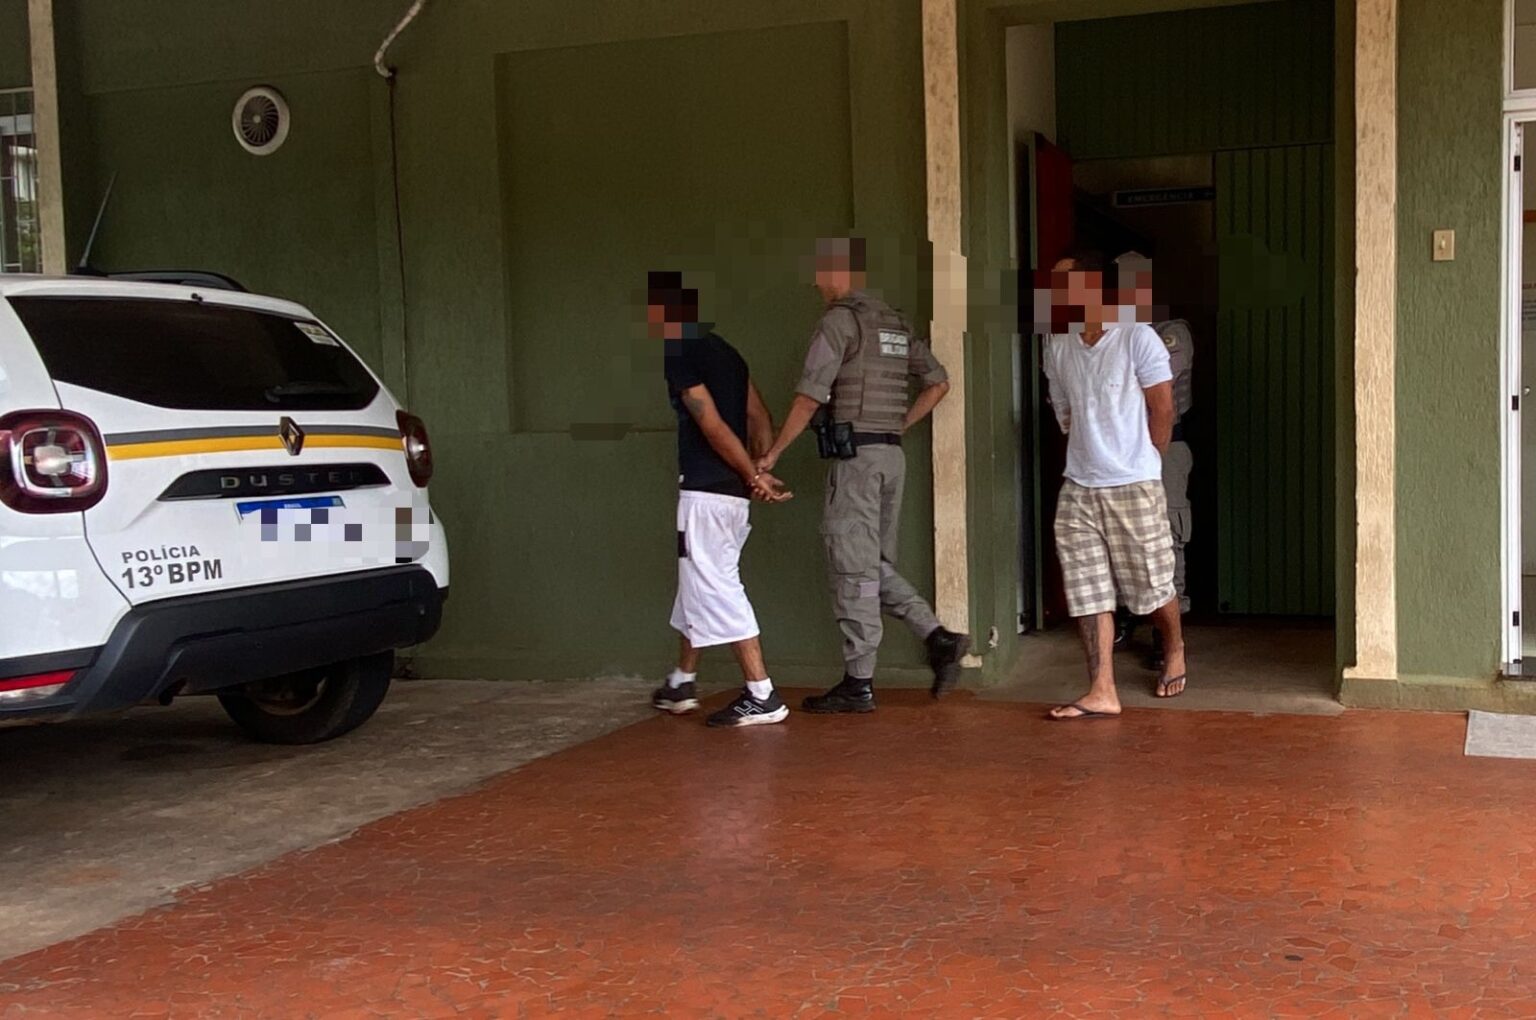 Três marginais foram presos pela Brigada Militar após se apropriarem de um carro, no município de Getúlio Vargas/RS.